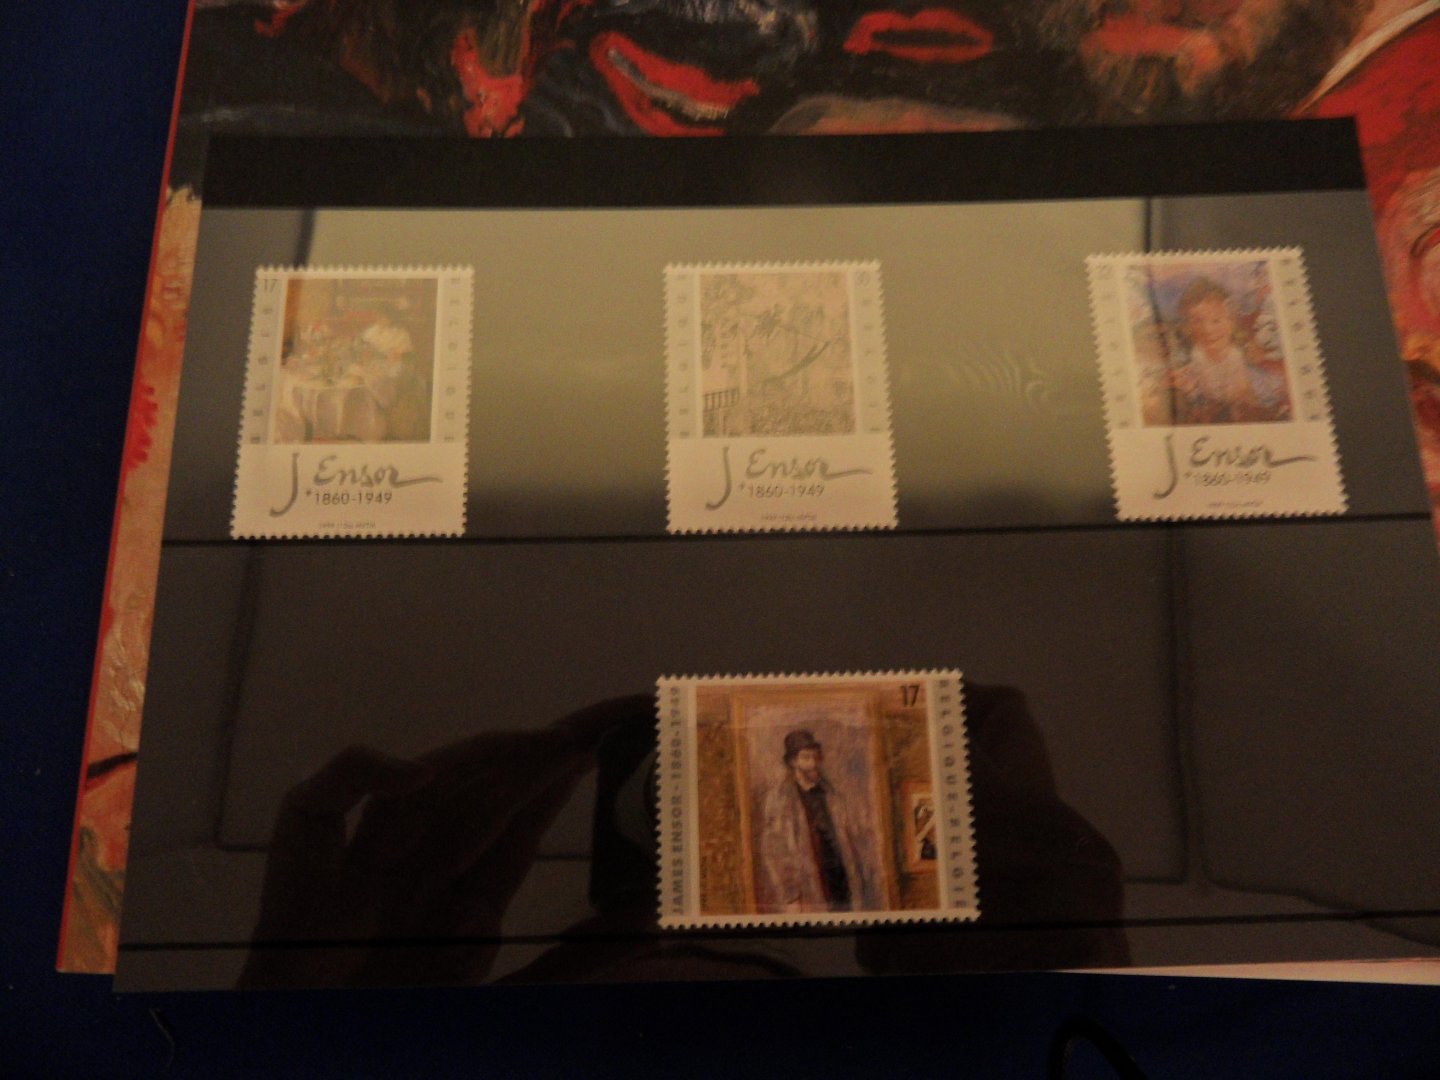  - James Ensor + set van 4 postzegels